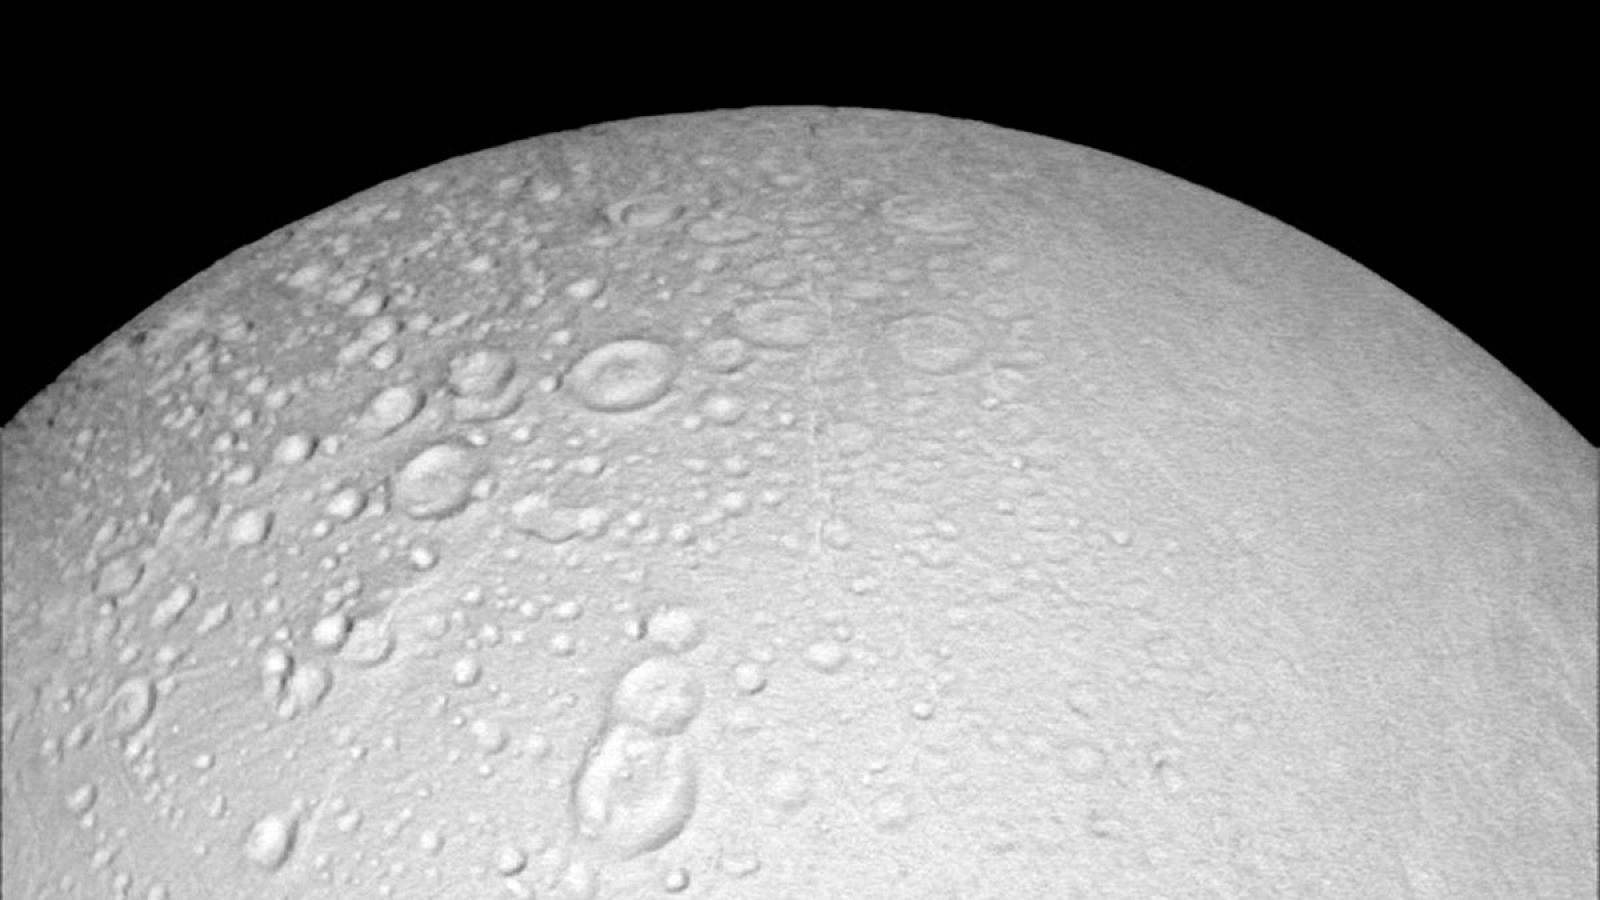 Imagen de Encélado, la luna helada de Saturno, tomada por Cassini.